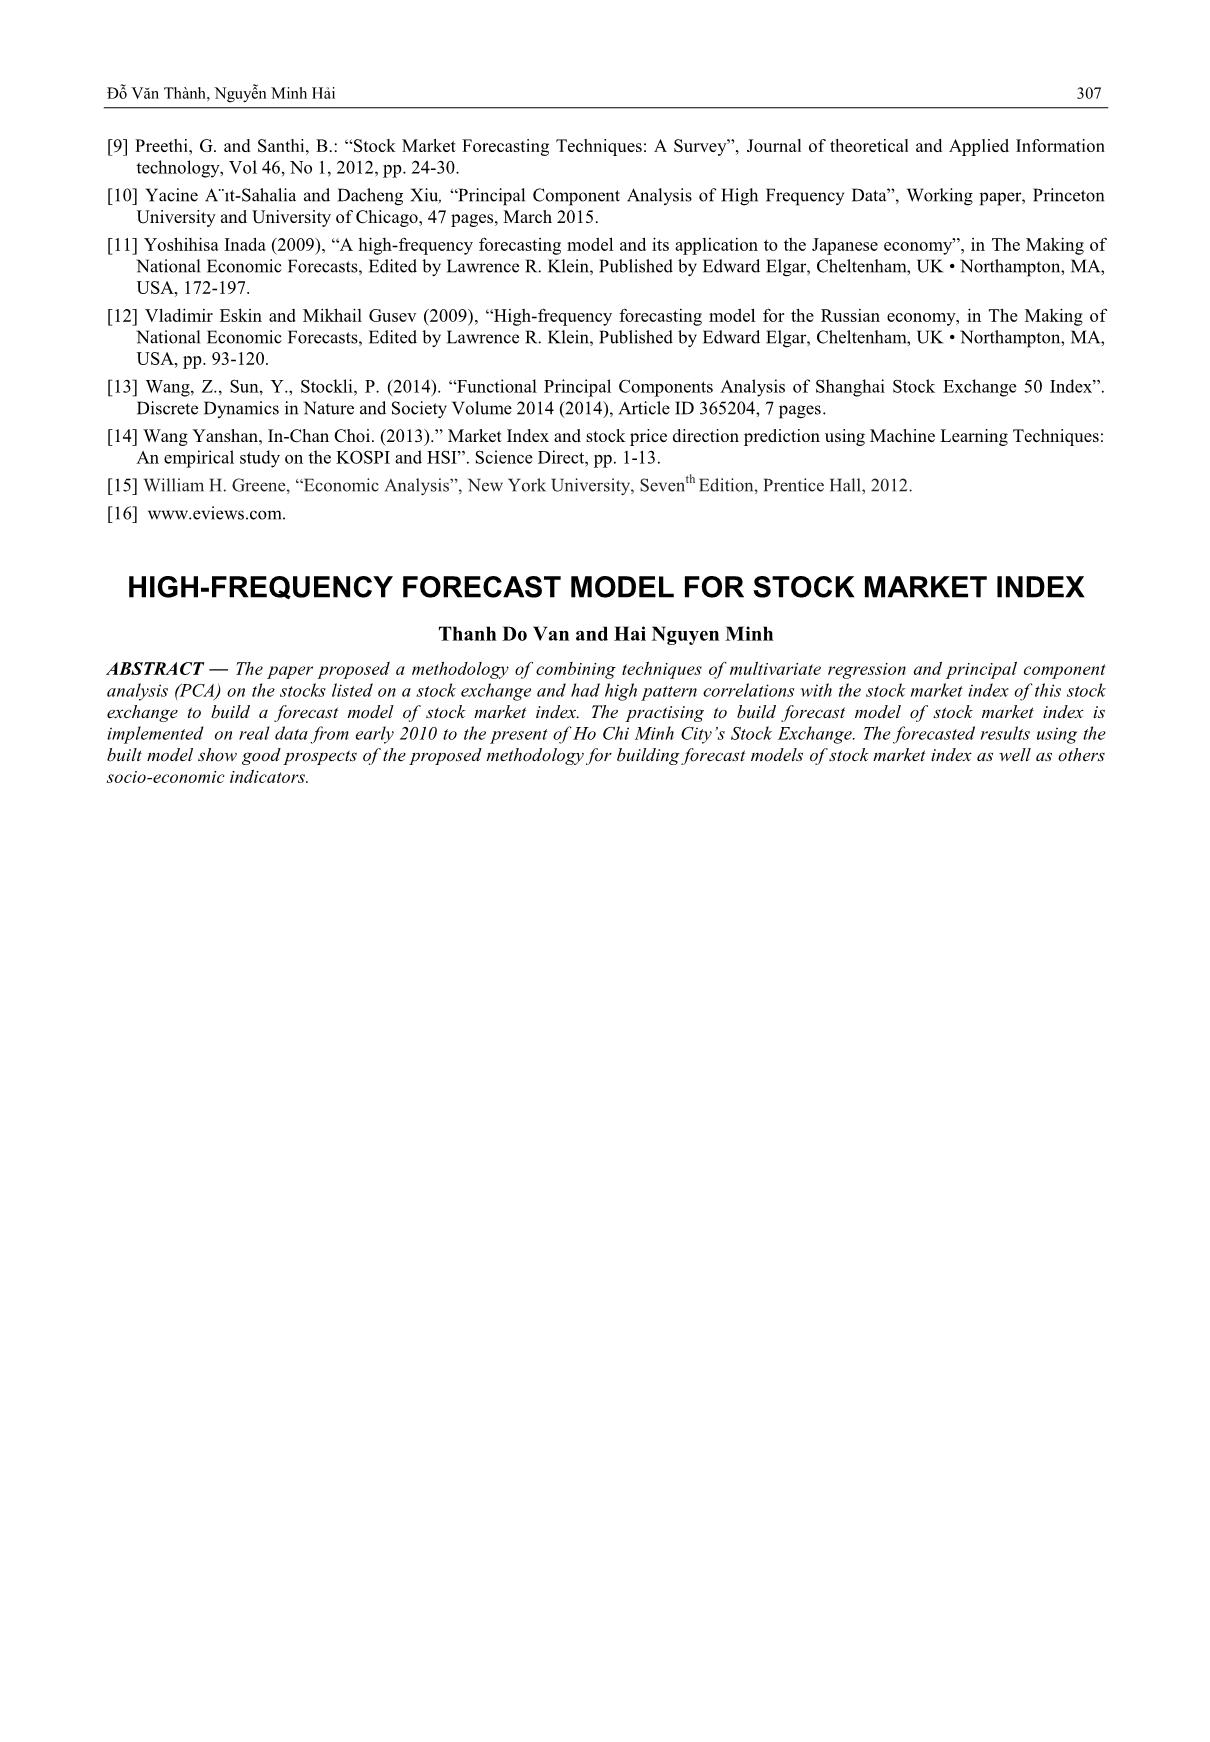 Mô hình dự báo tần suất cao đối với chỉ số thị trường chứng khoán trang 9